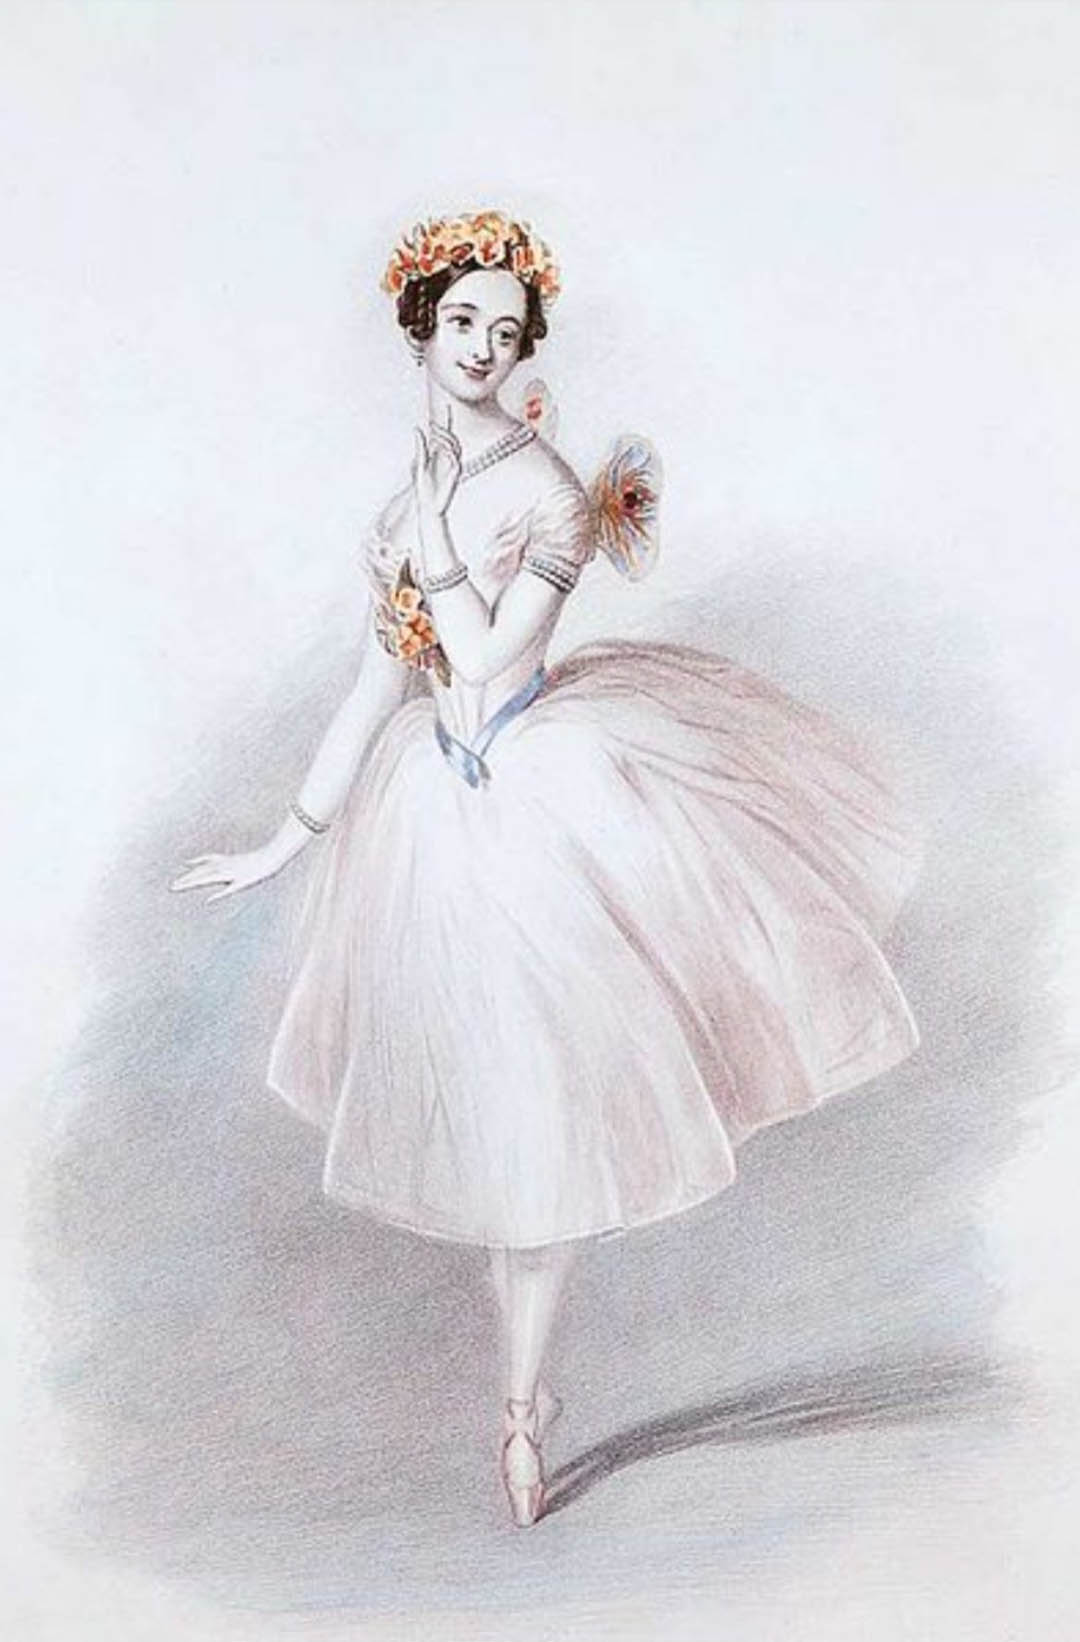 La danseuse Marie Taglioni dans le costume de La Sylphide du ballet éponyme.